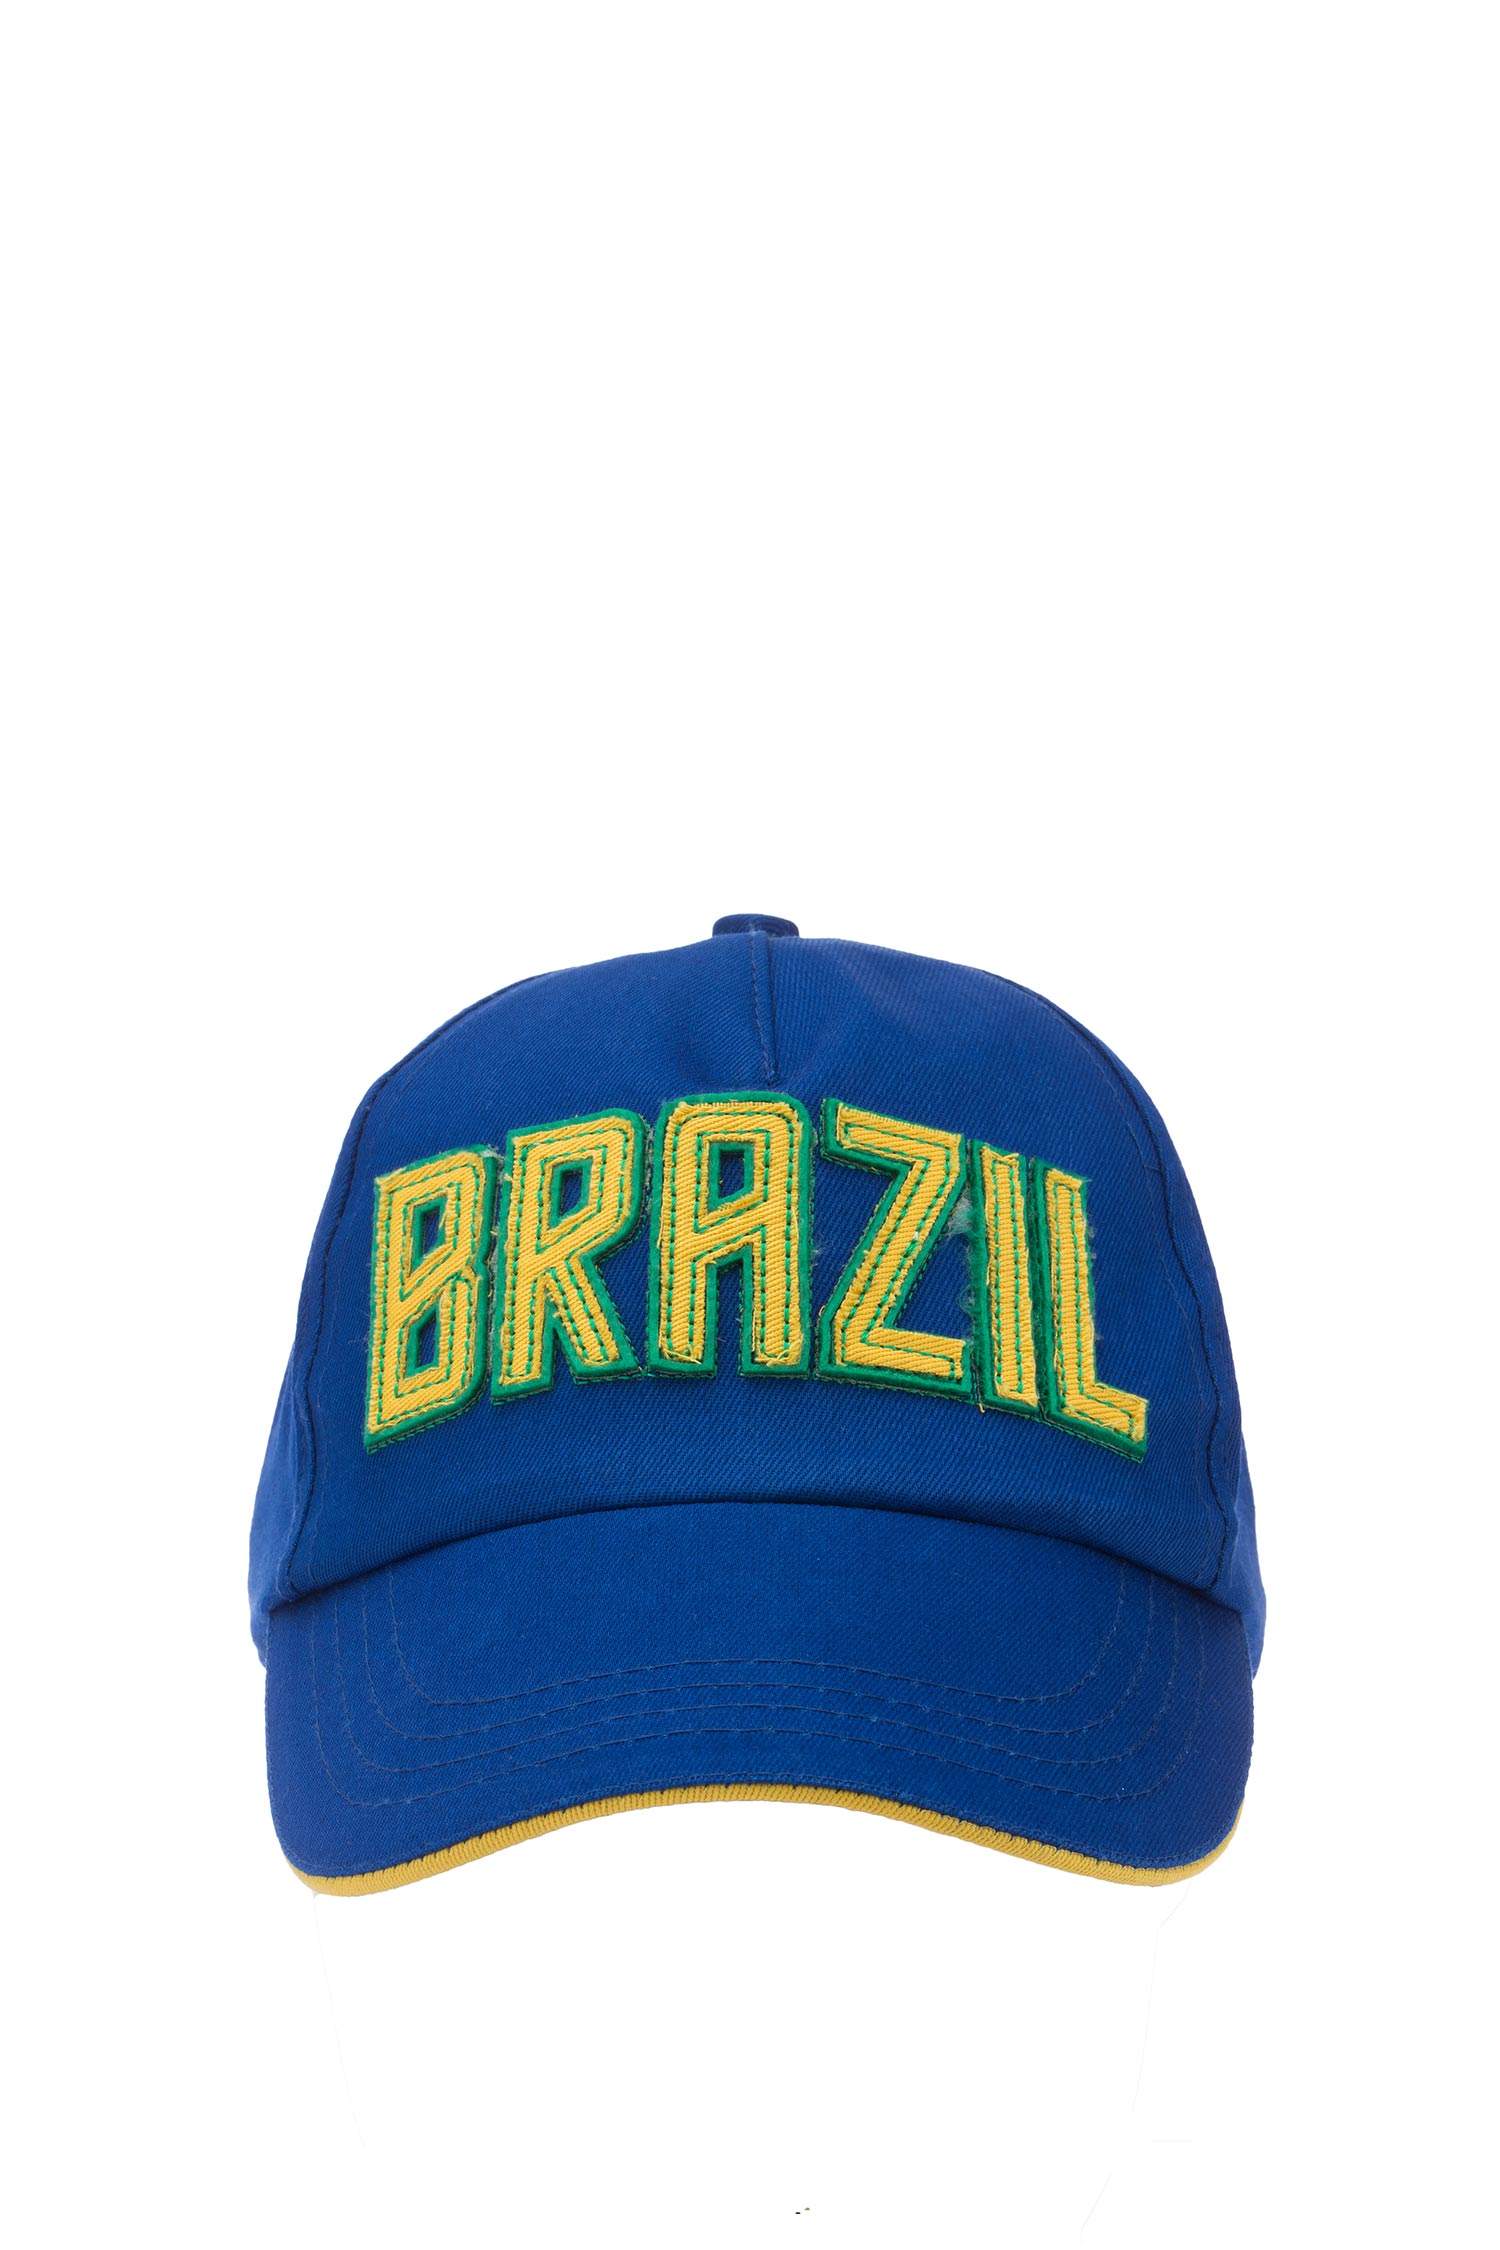 Defacto Brezilya Şapka. 2